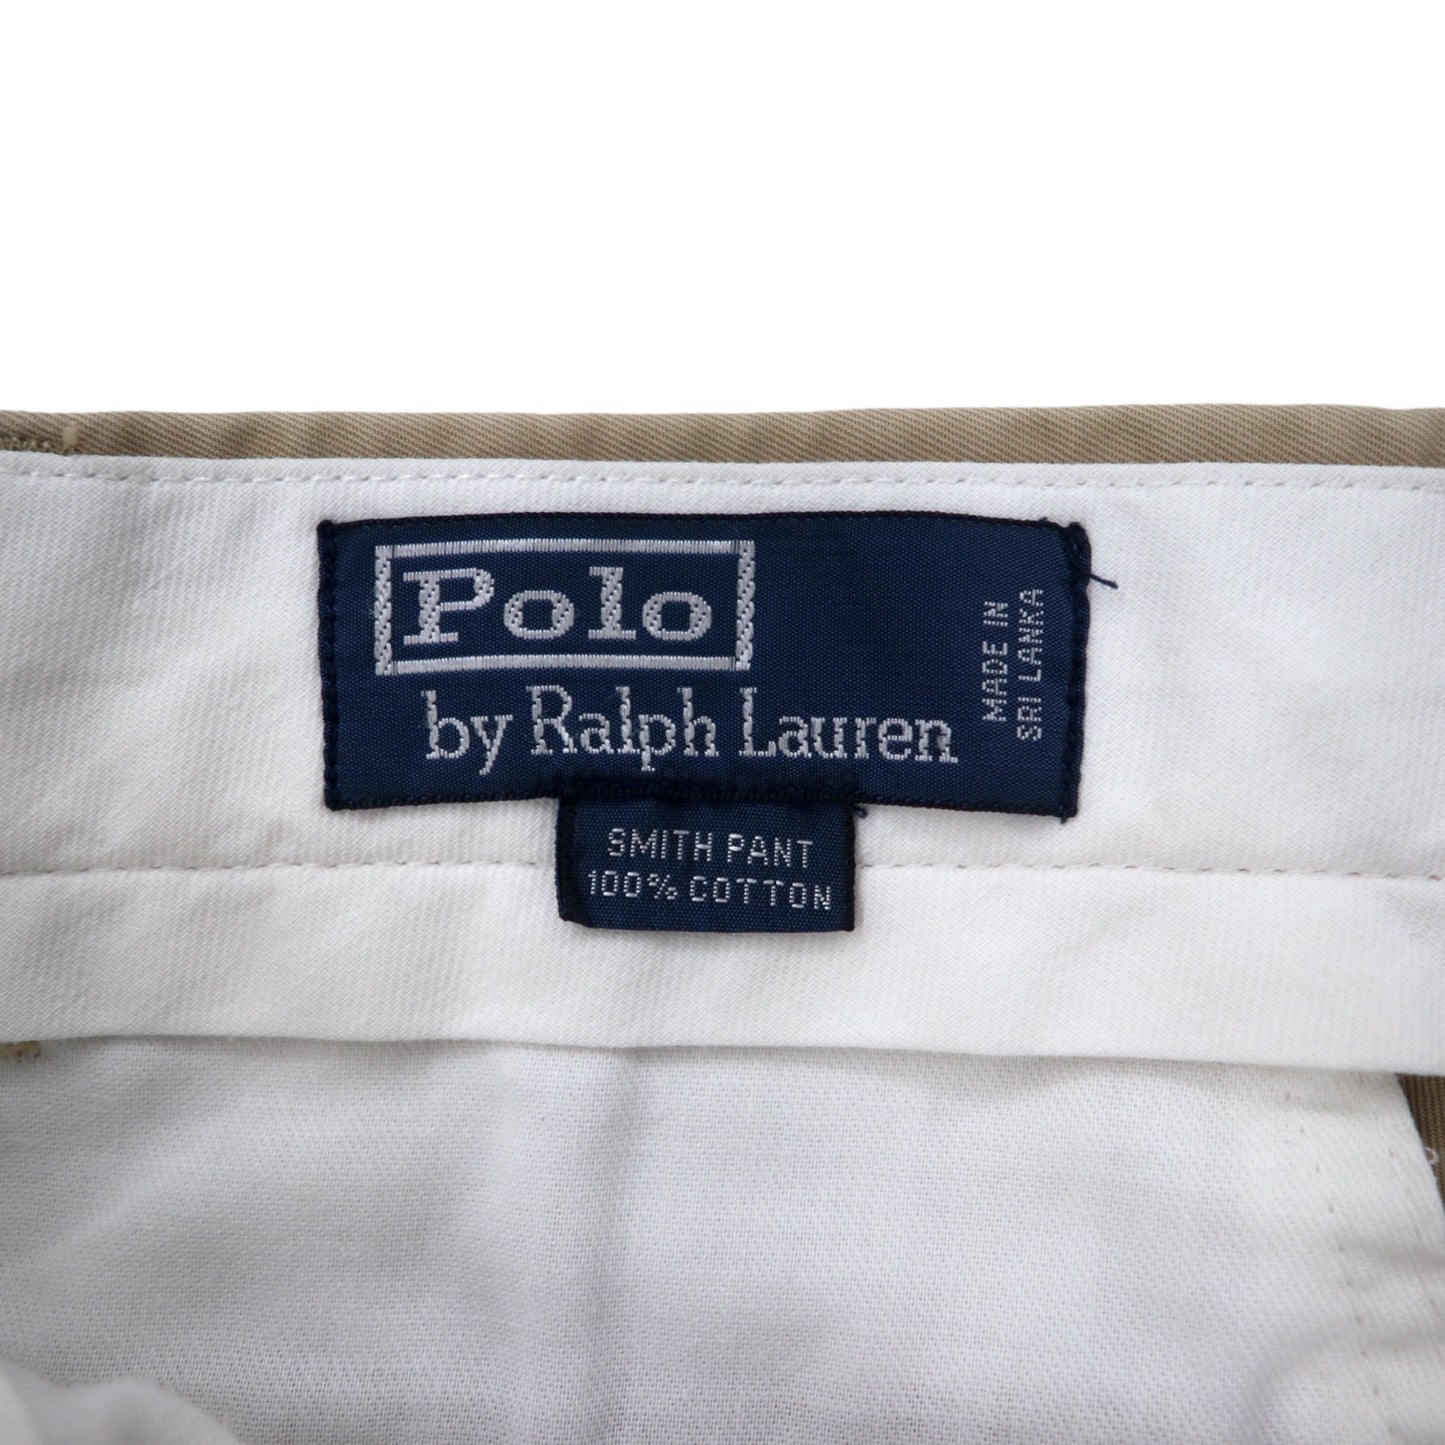 Polo by Ralph Lauren チノパンツ 30 ベージュ コットン SMITH PANT スリランカ製